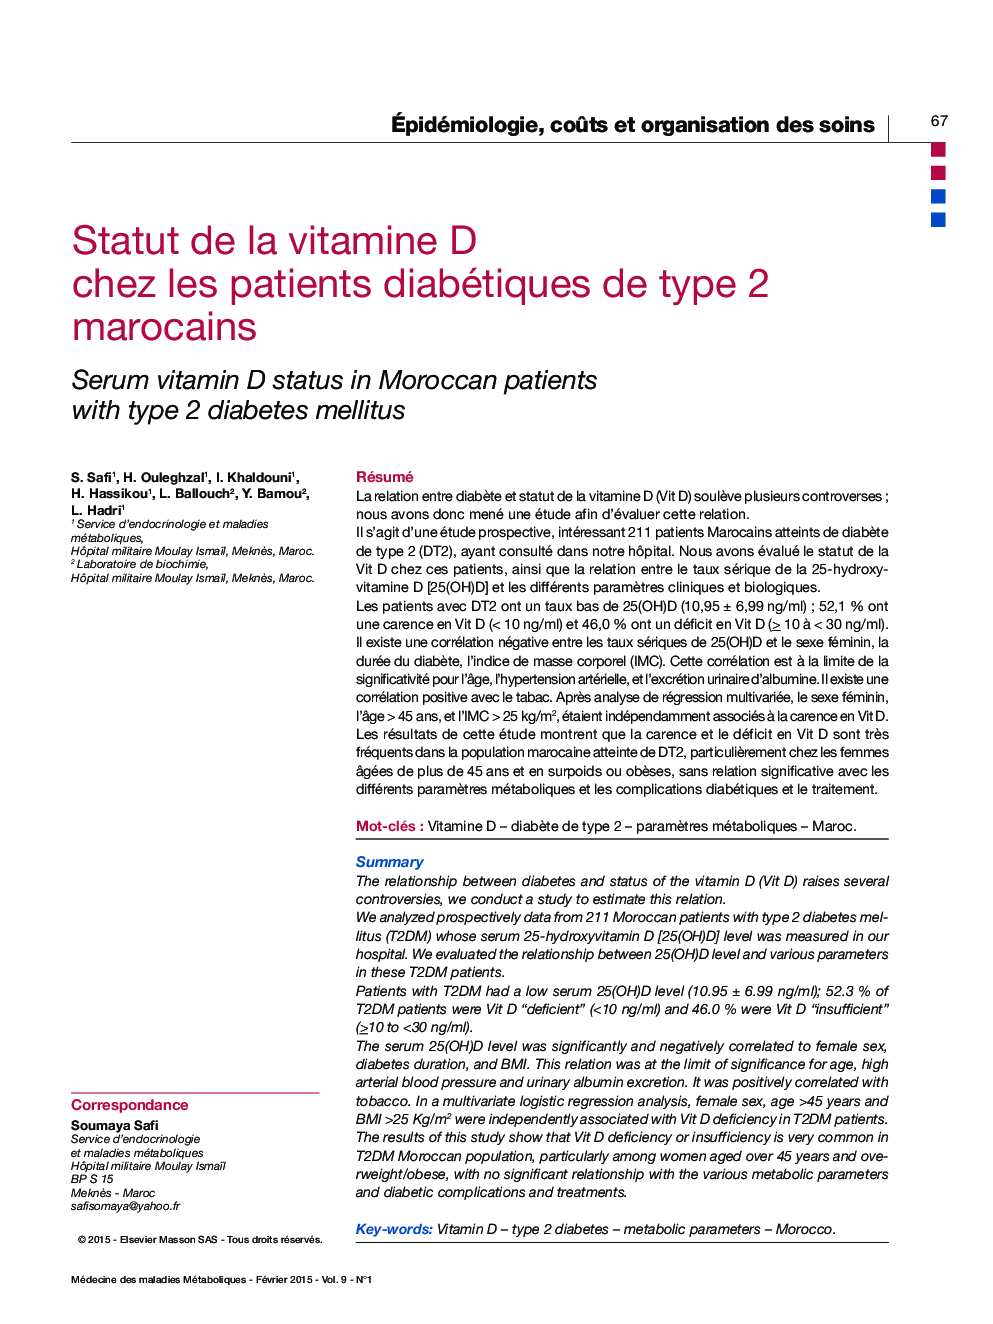 Statut de la vitamine D chez les patients diabétiques de type 2 marocains